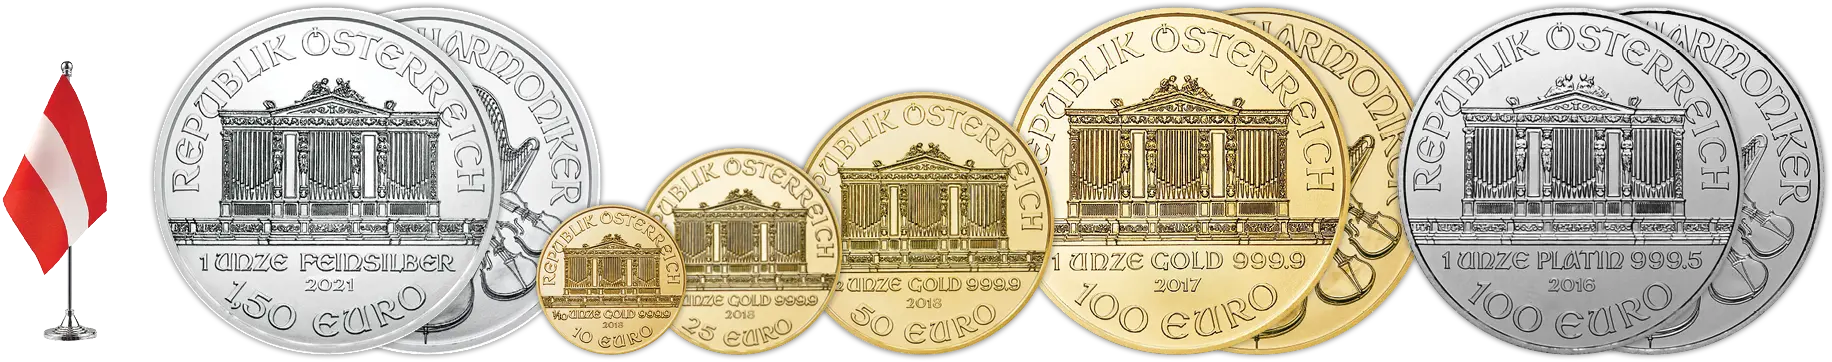 Bécsi Filharmonikus érmesor - 1 uncia ezüst érme, arany érme 1 unciától tized unciáig